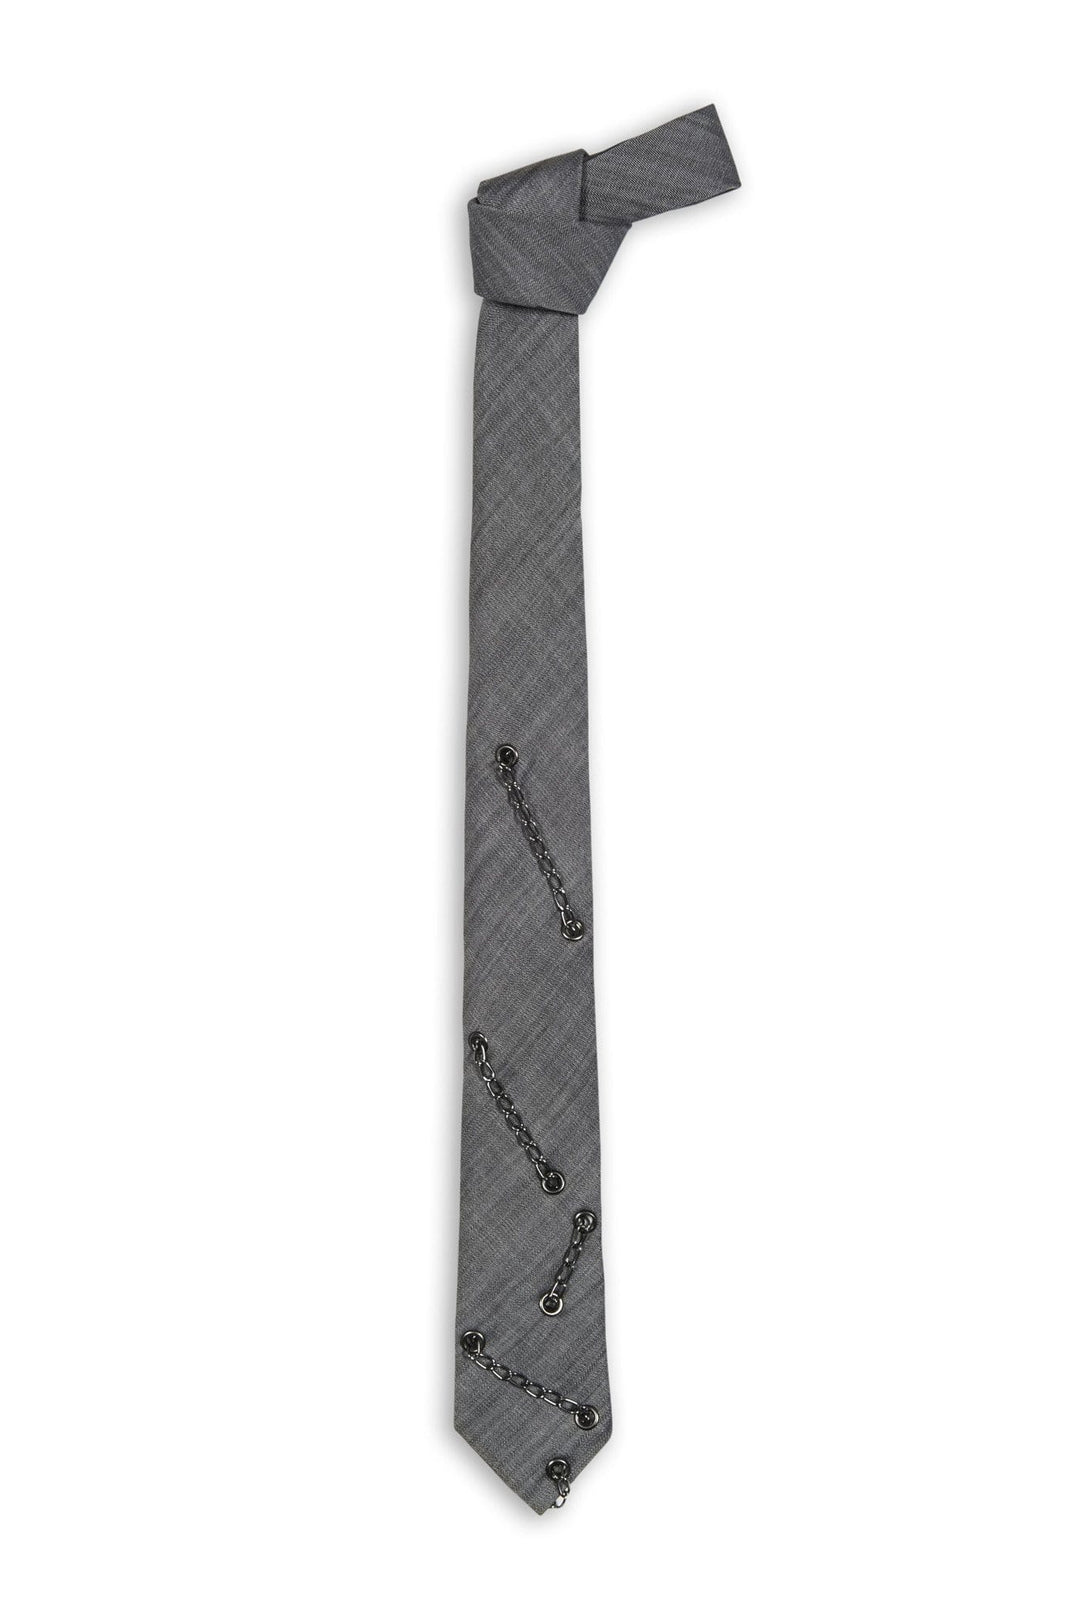 Swell Fellow Cravate 2.5''x 58'' - Sans le mouchoir assorti / Gris / 100% Laine Cravate Mauro